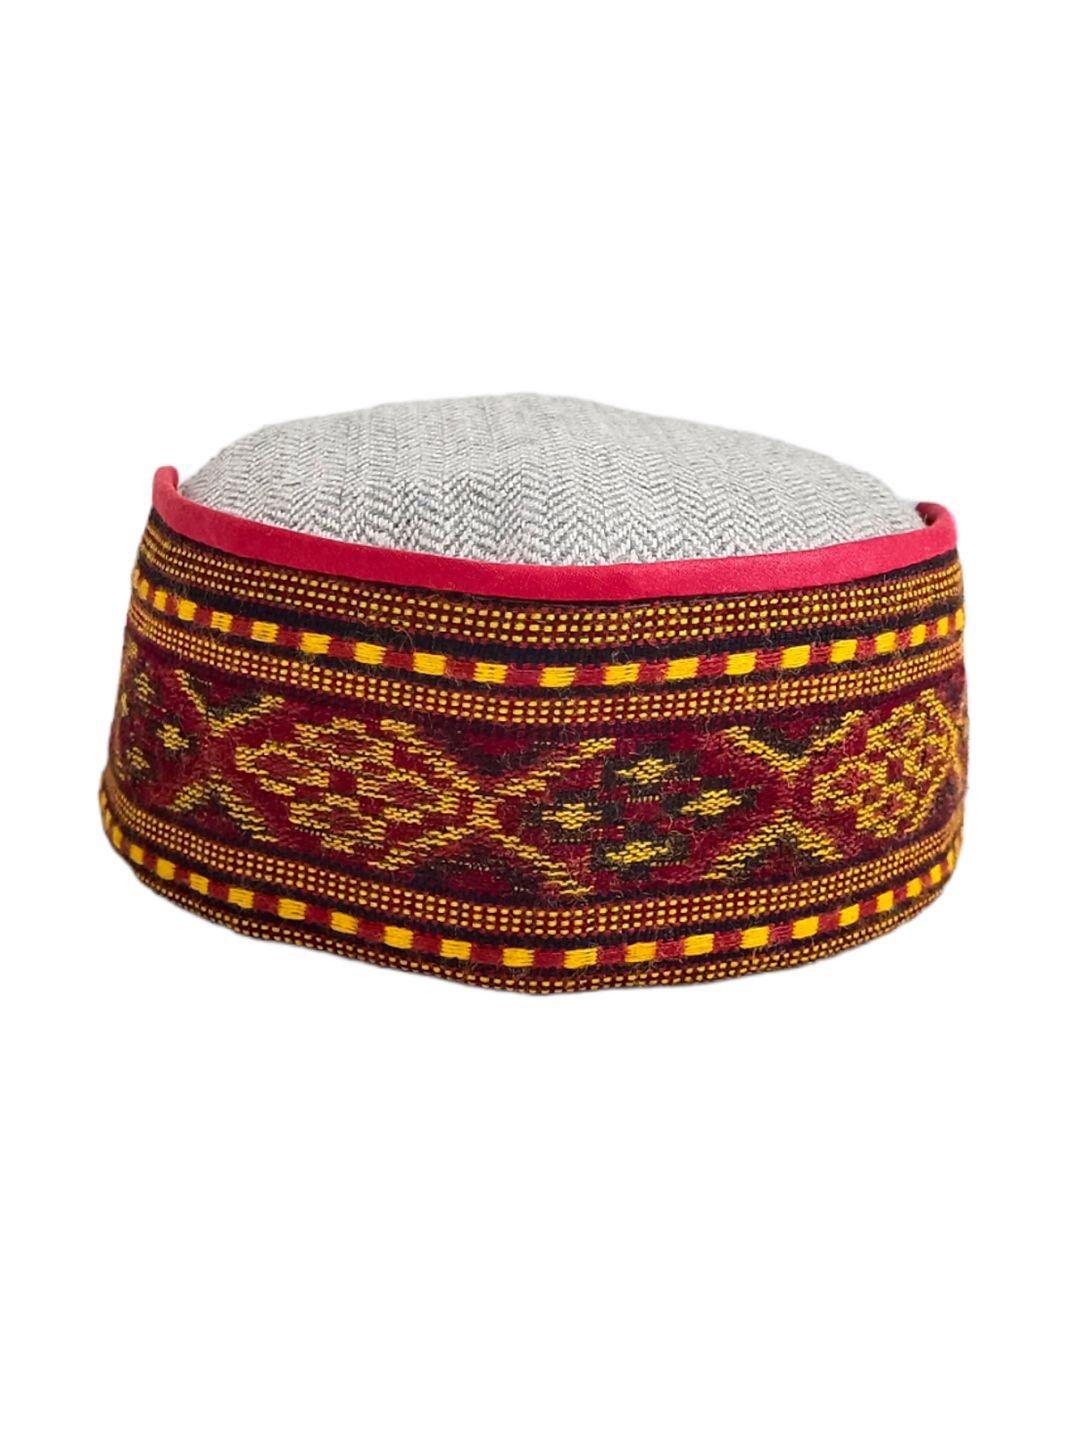 vastraa fusion pink & grey embroidered woolen himachali cap